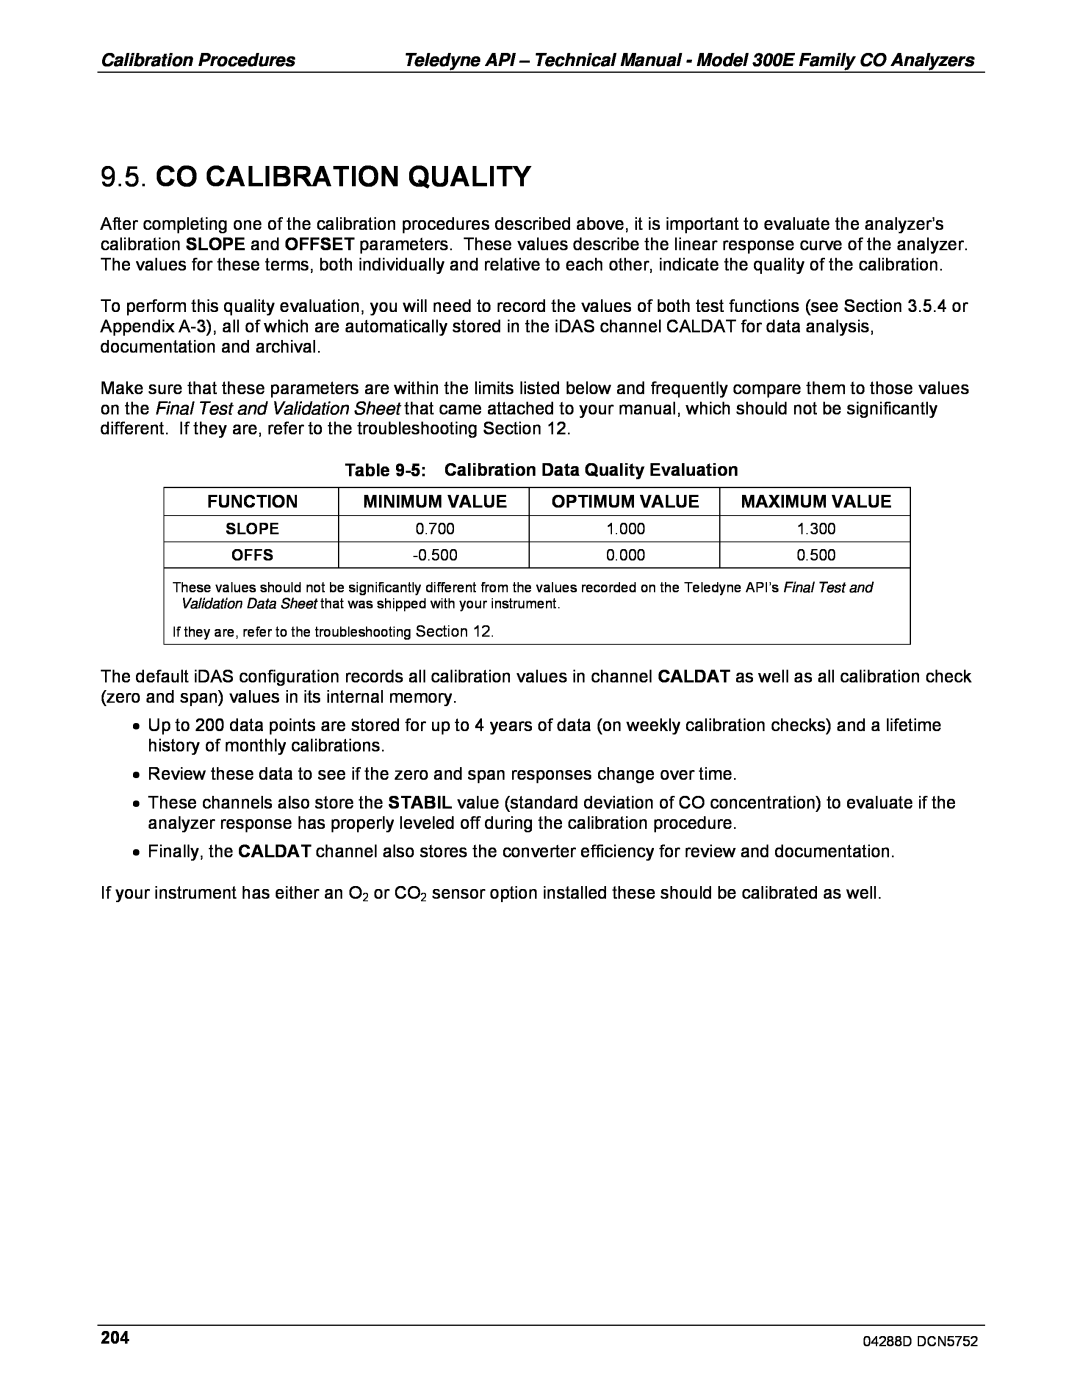 Teledyne M300EM Co Calibration Quality, 5:Calibration Data Quality Evaluation, Function, Minimum Value, Optimum Value 